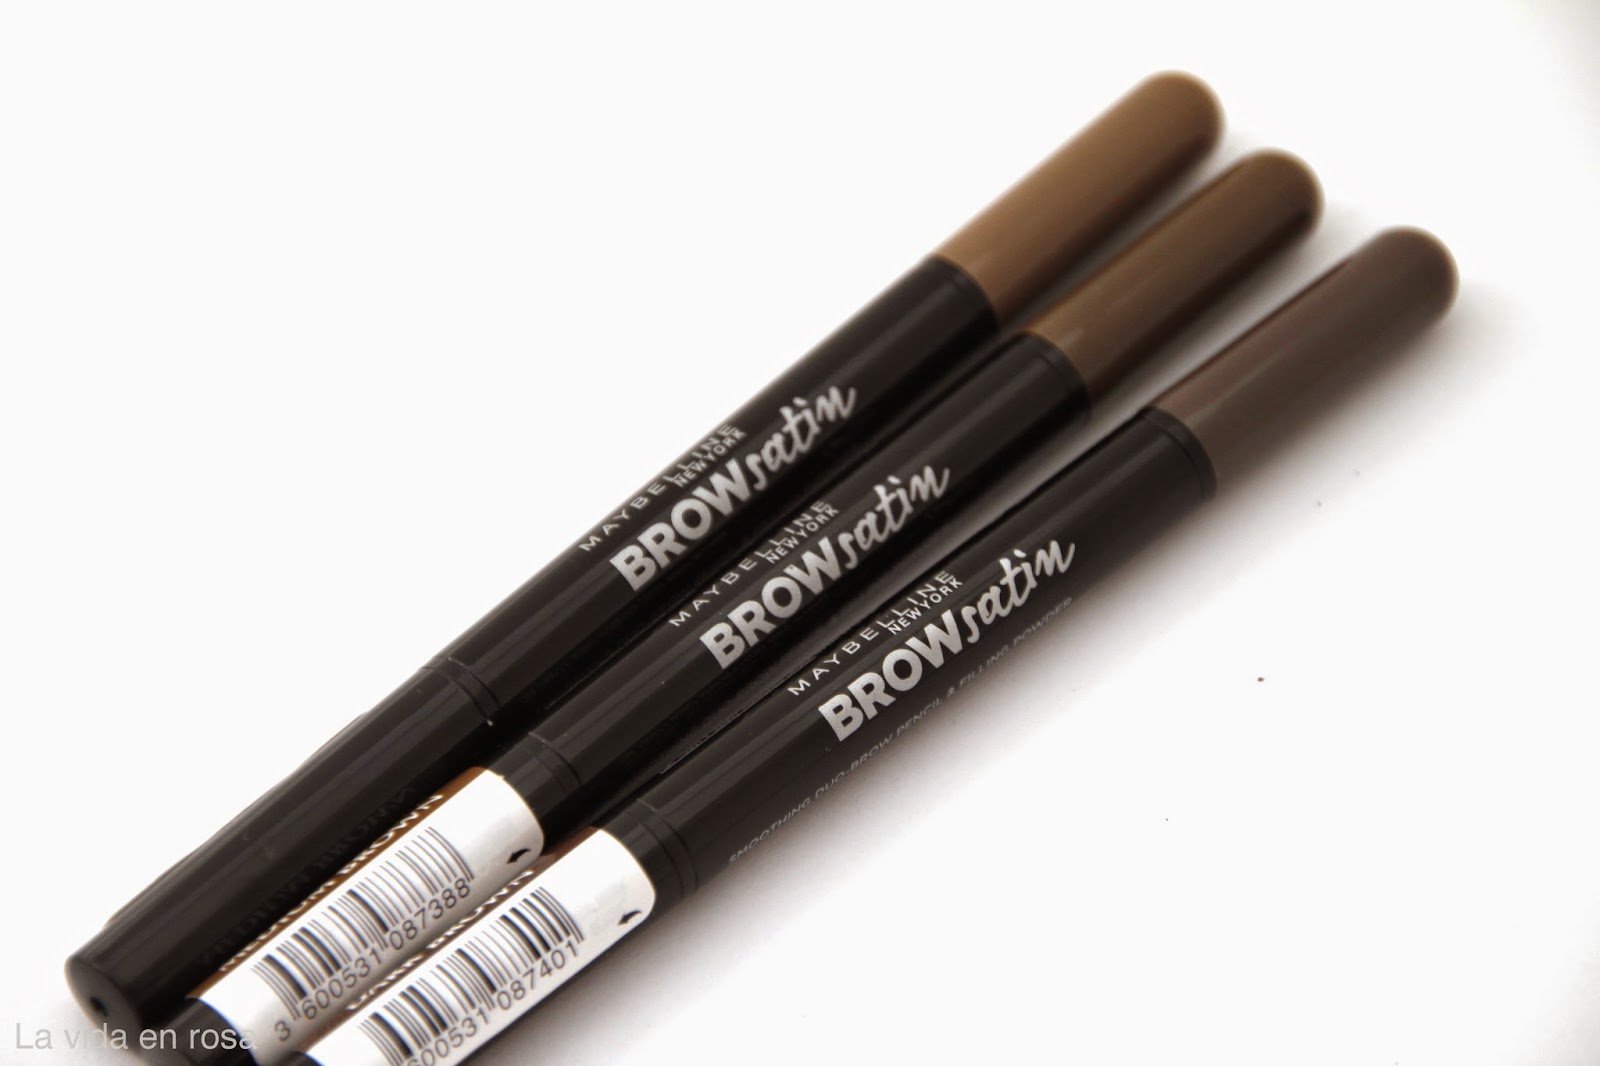 Diseña tus cejas con el nuevo lápiz BROWsatin La vida en